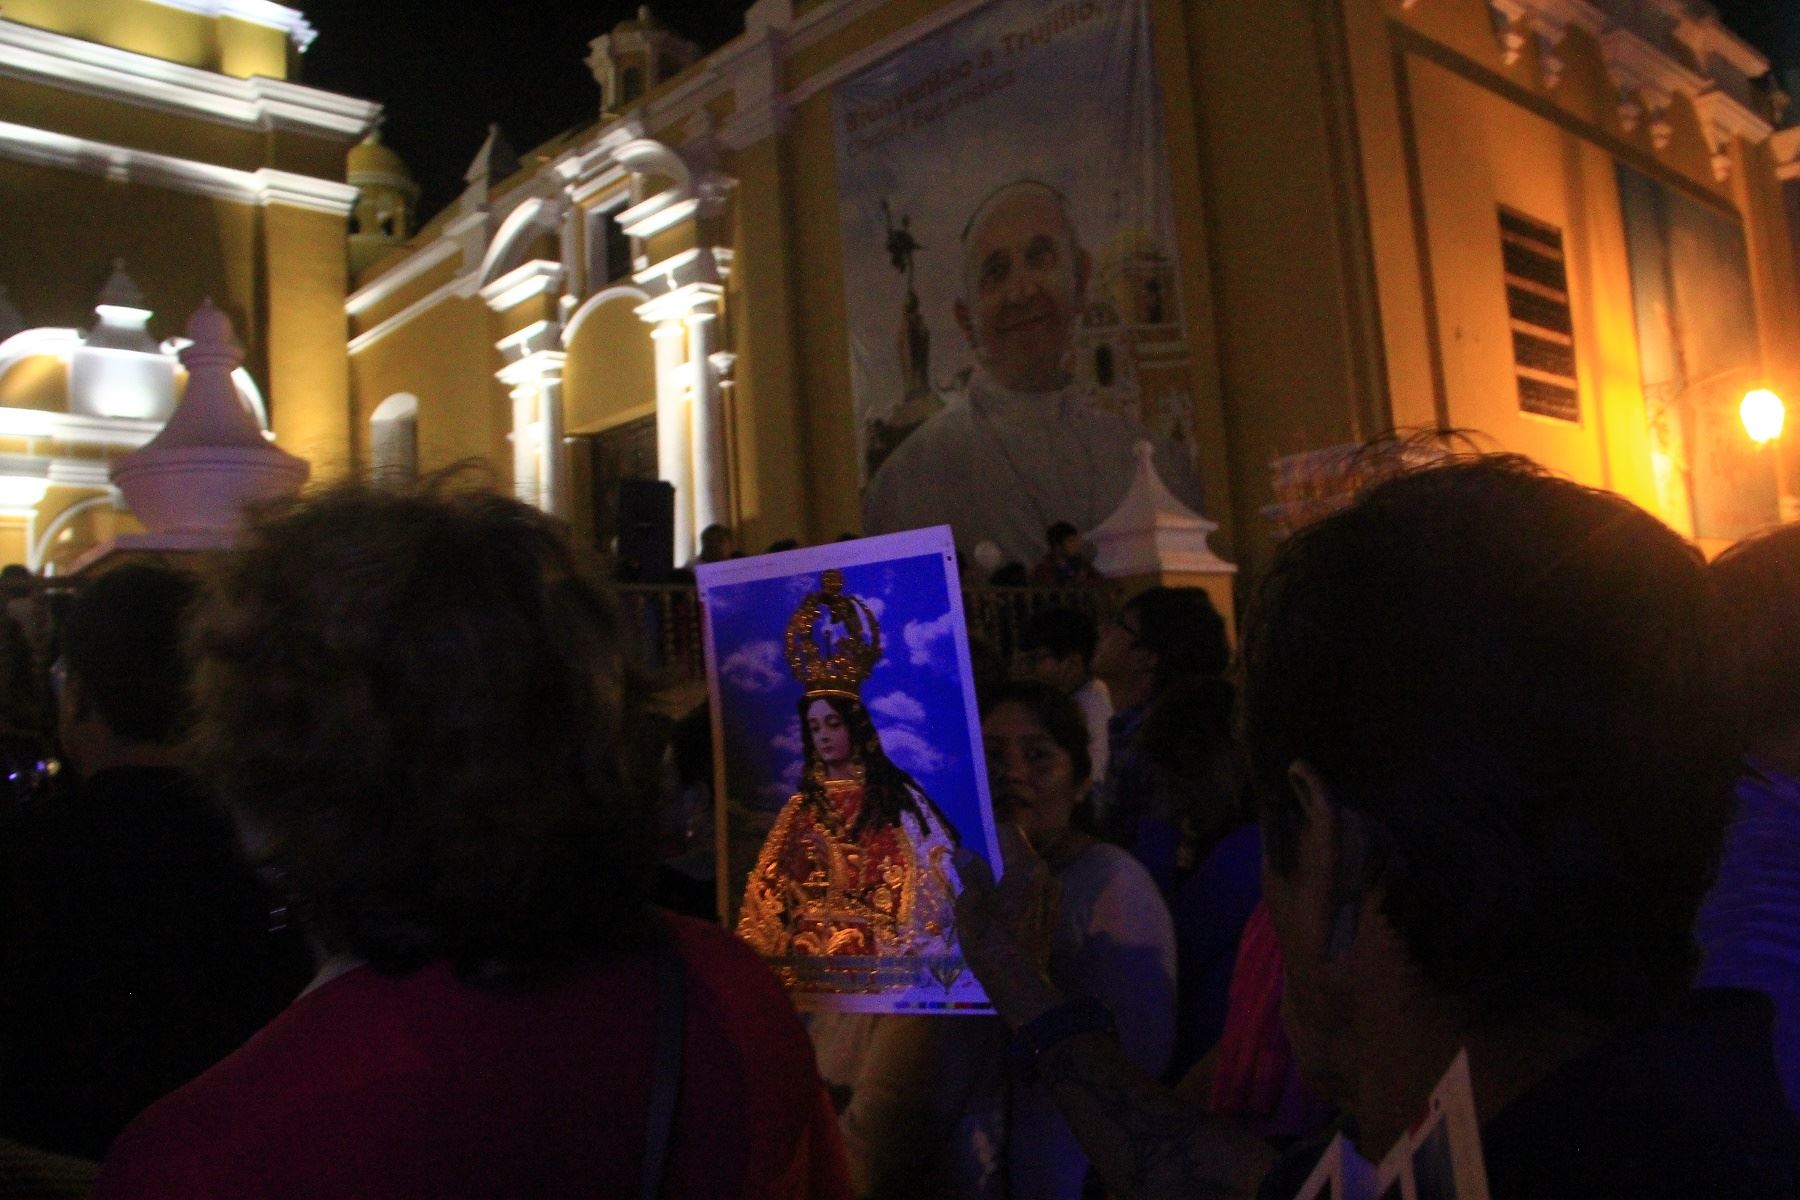 Imagen de la Virgen de la Puerta tuvo multitudinario recibimiento a su llegada a Trujillo, donde participará del encuentro con el Papa Francisco. Foto: ANDINA/Luis Puell.